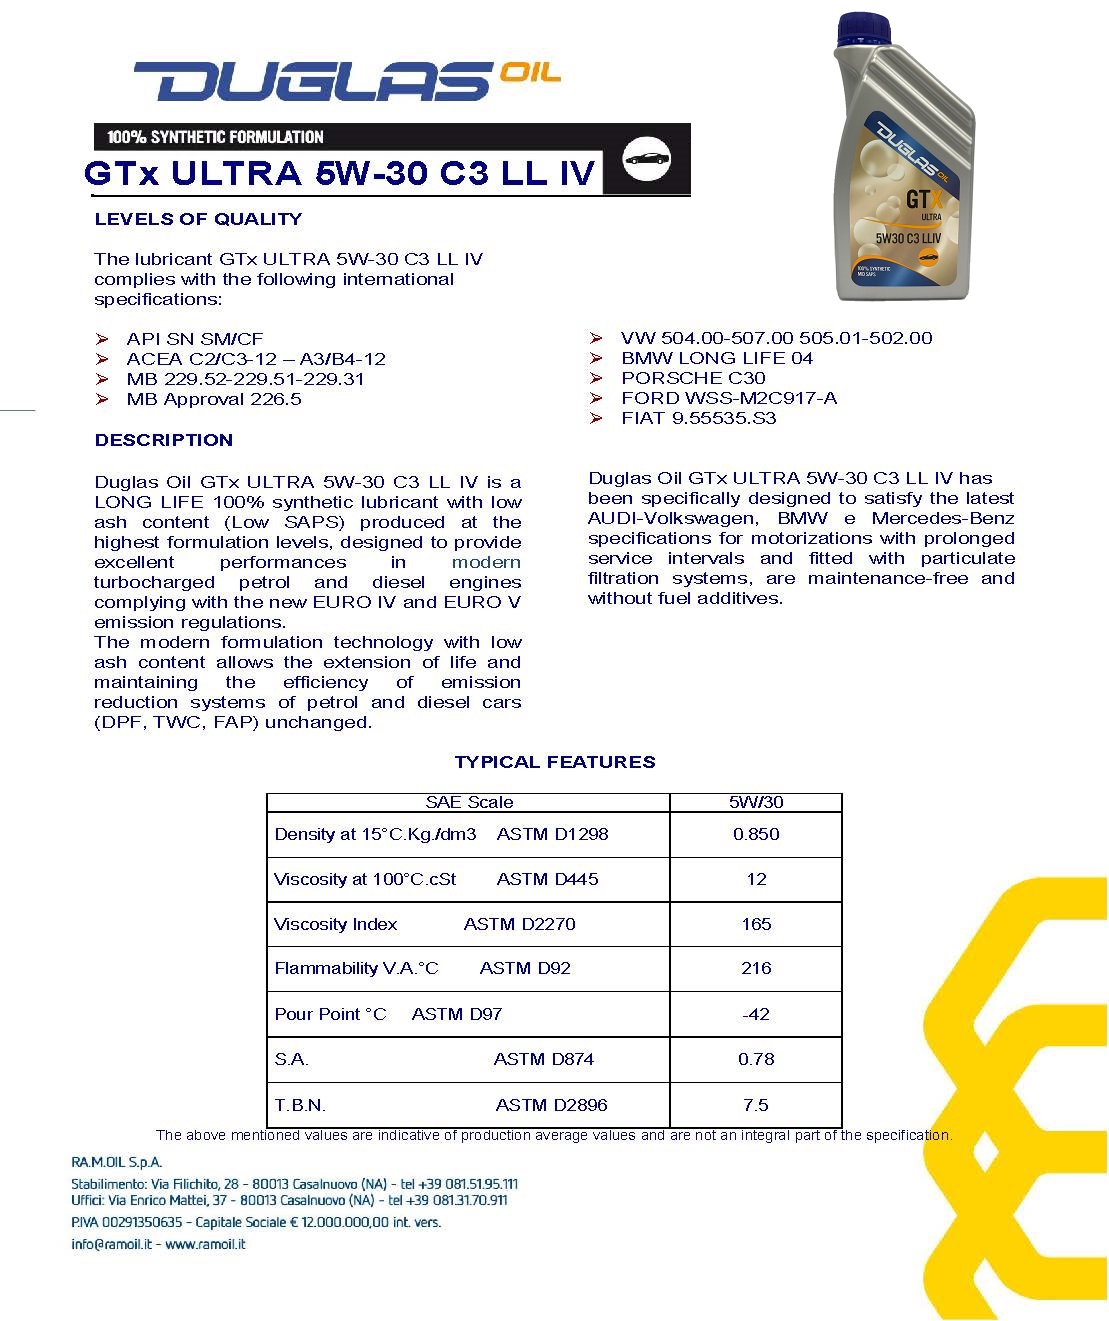 GTx-ULTRA-5W-30-C3-LLIV-R.02-en